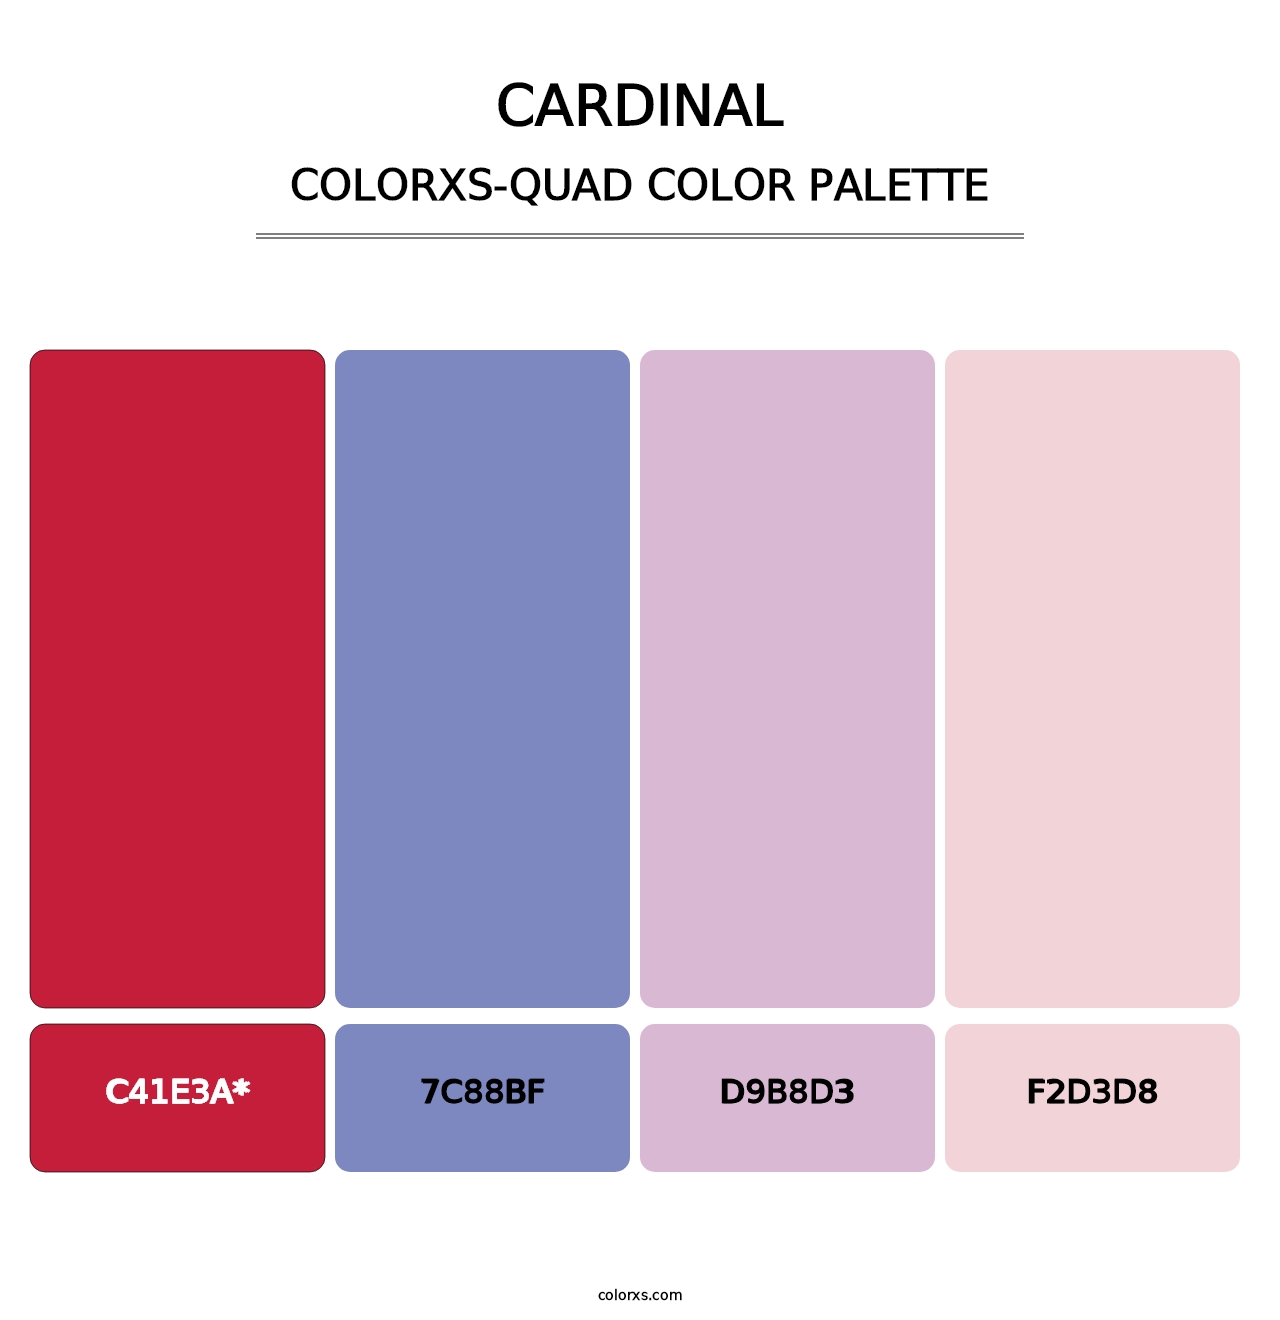 Cardinal - Colorxs Quad Palette